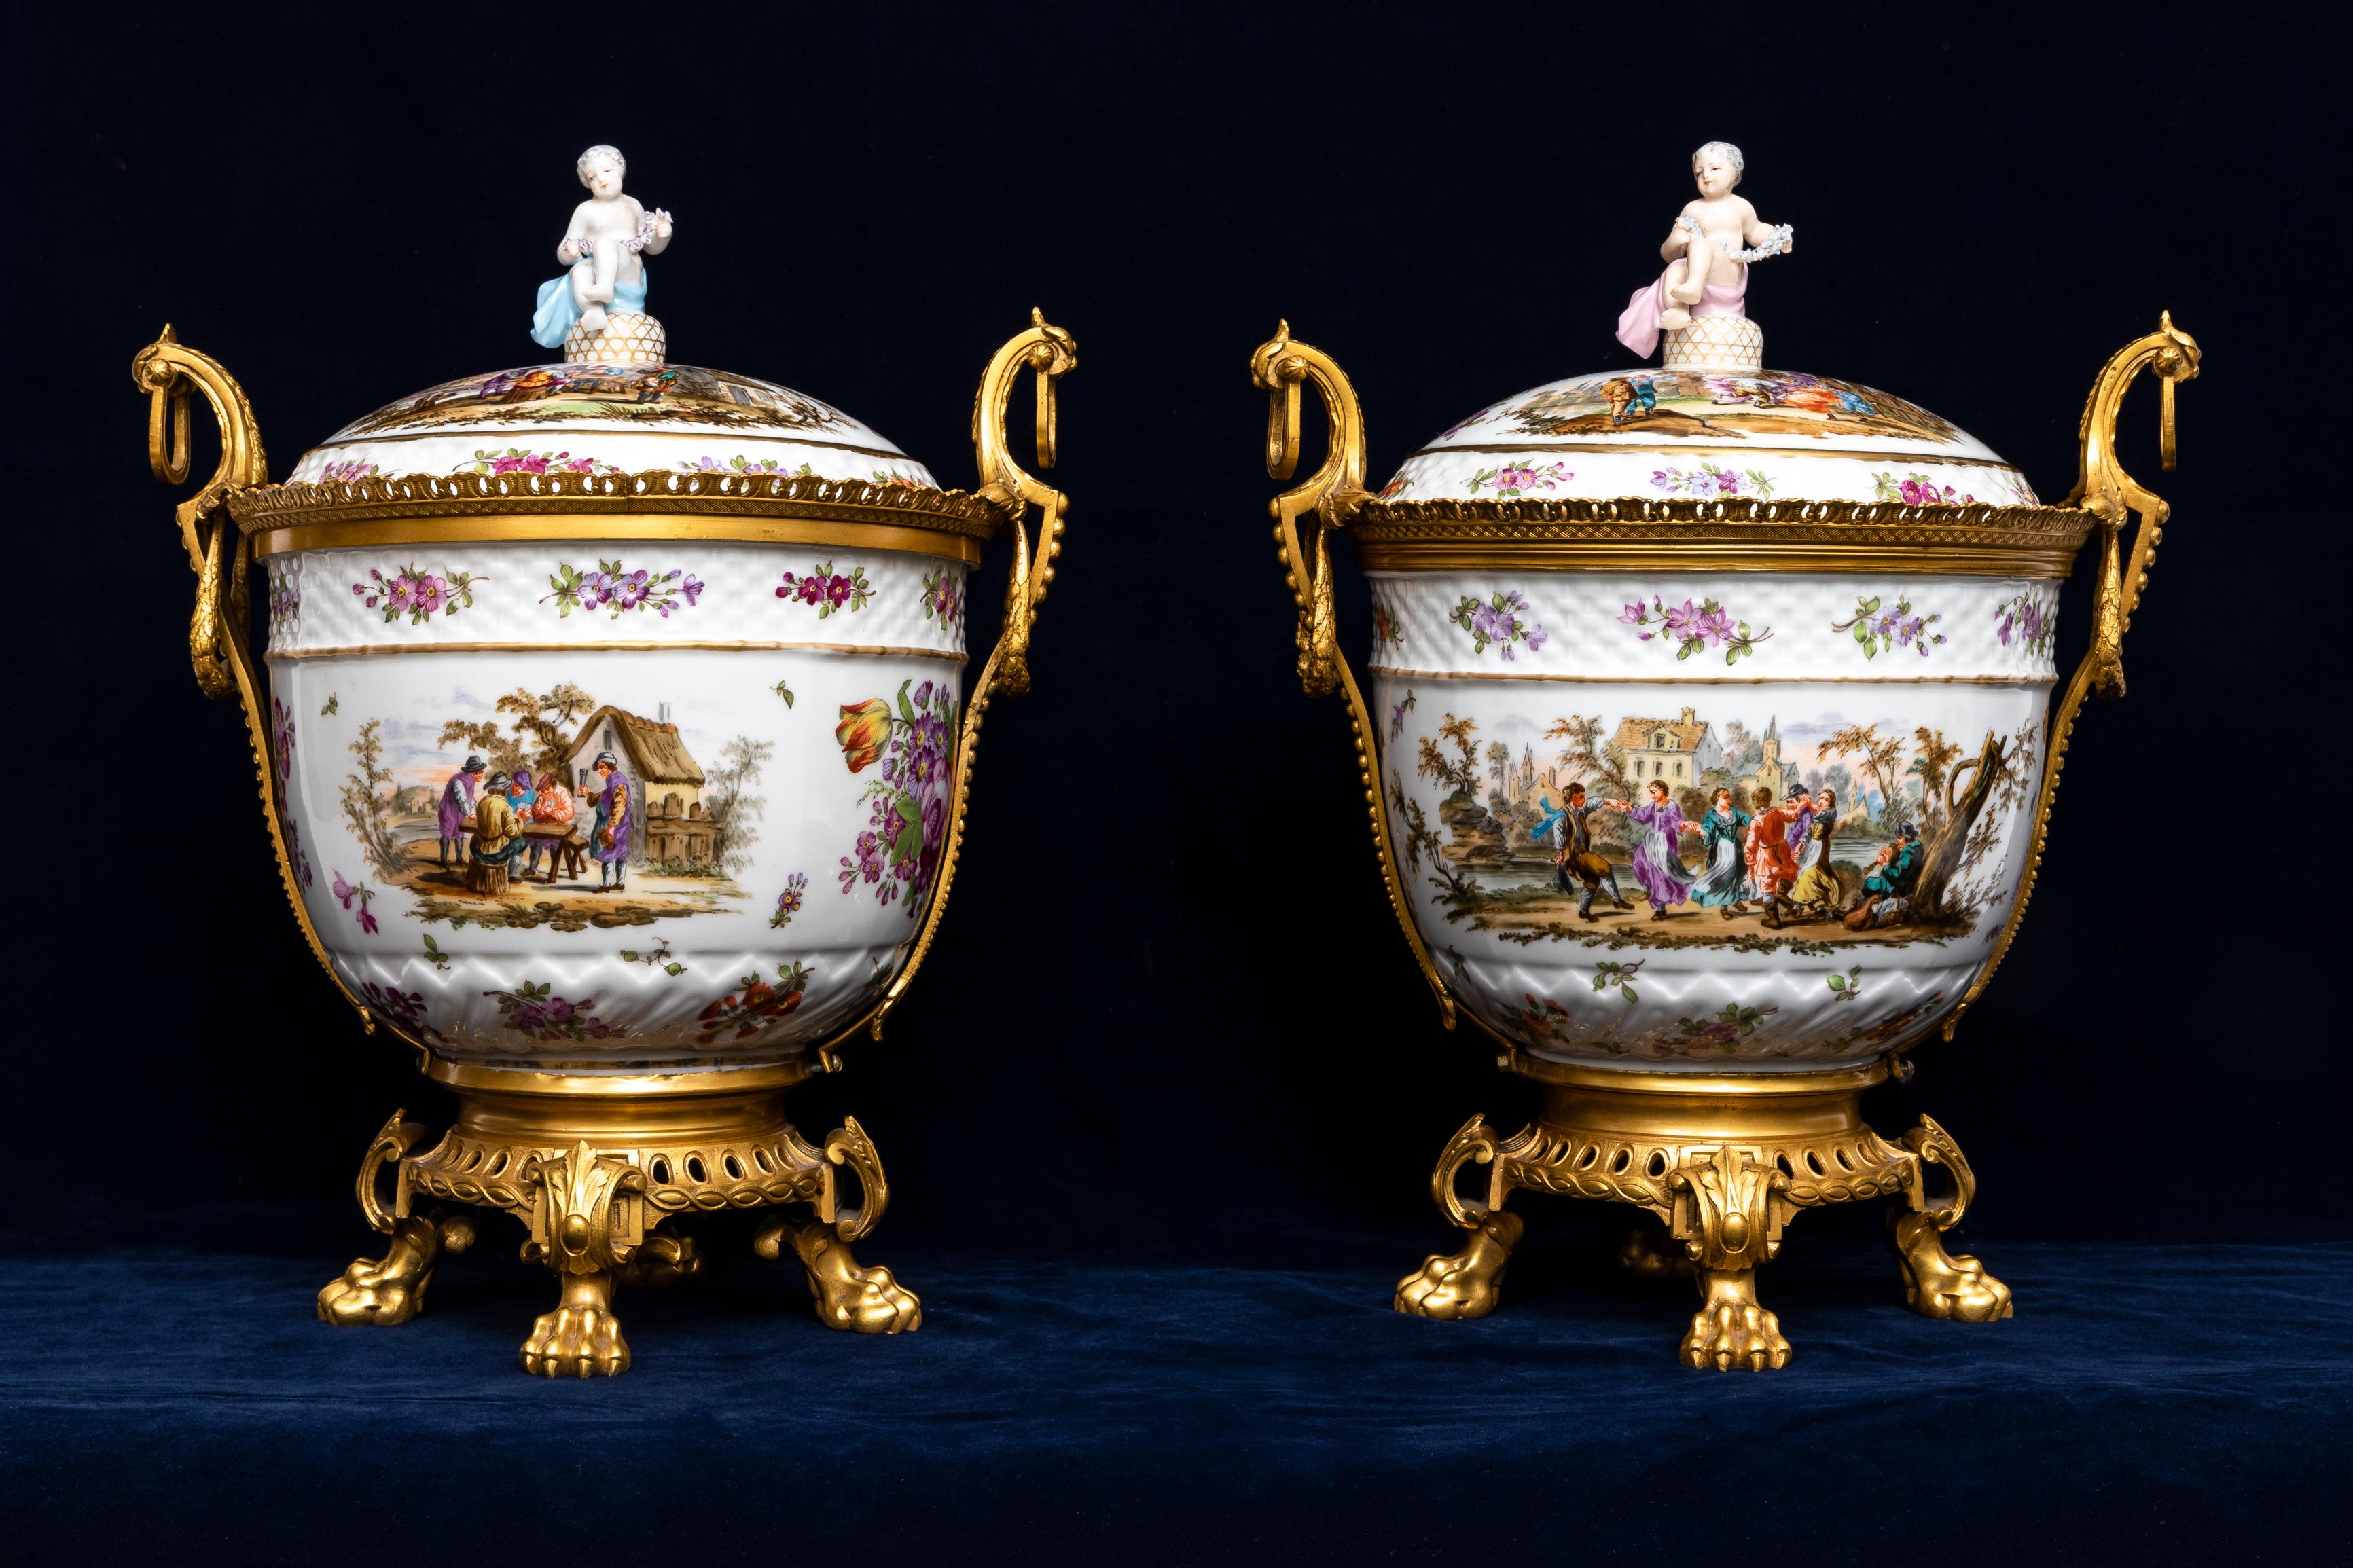 Paire de soupières couvertes en porcelaine de Meissen d'époque Marcolini du 18e siècle avec des montures en bronze doré du 19e siècle.  Ces soupières montrent la combinaison des tendances emblématiques de la porcelaine française et allemande. 